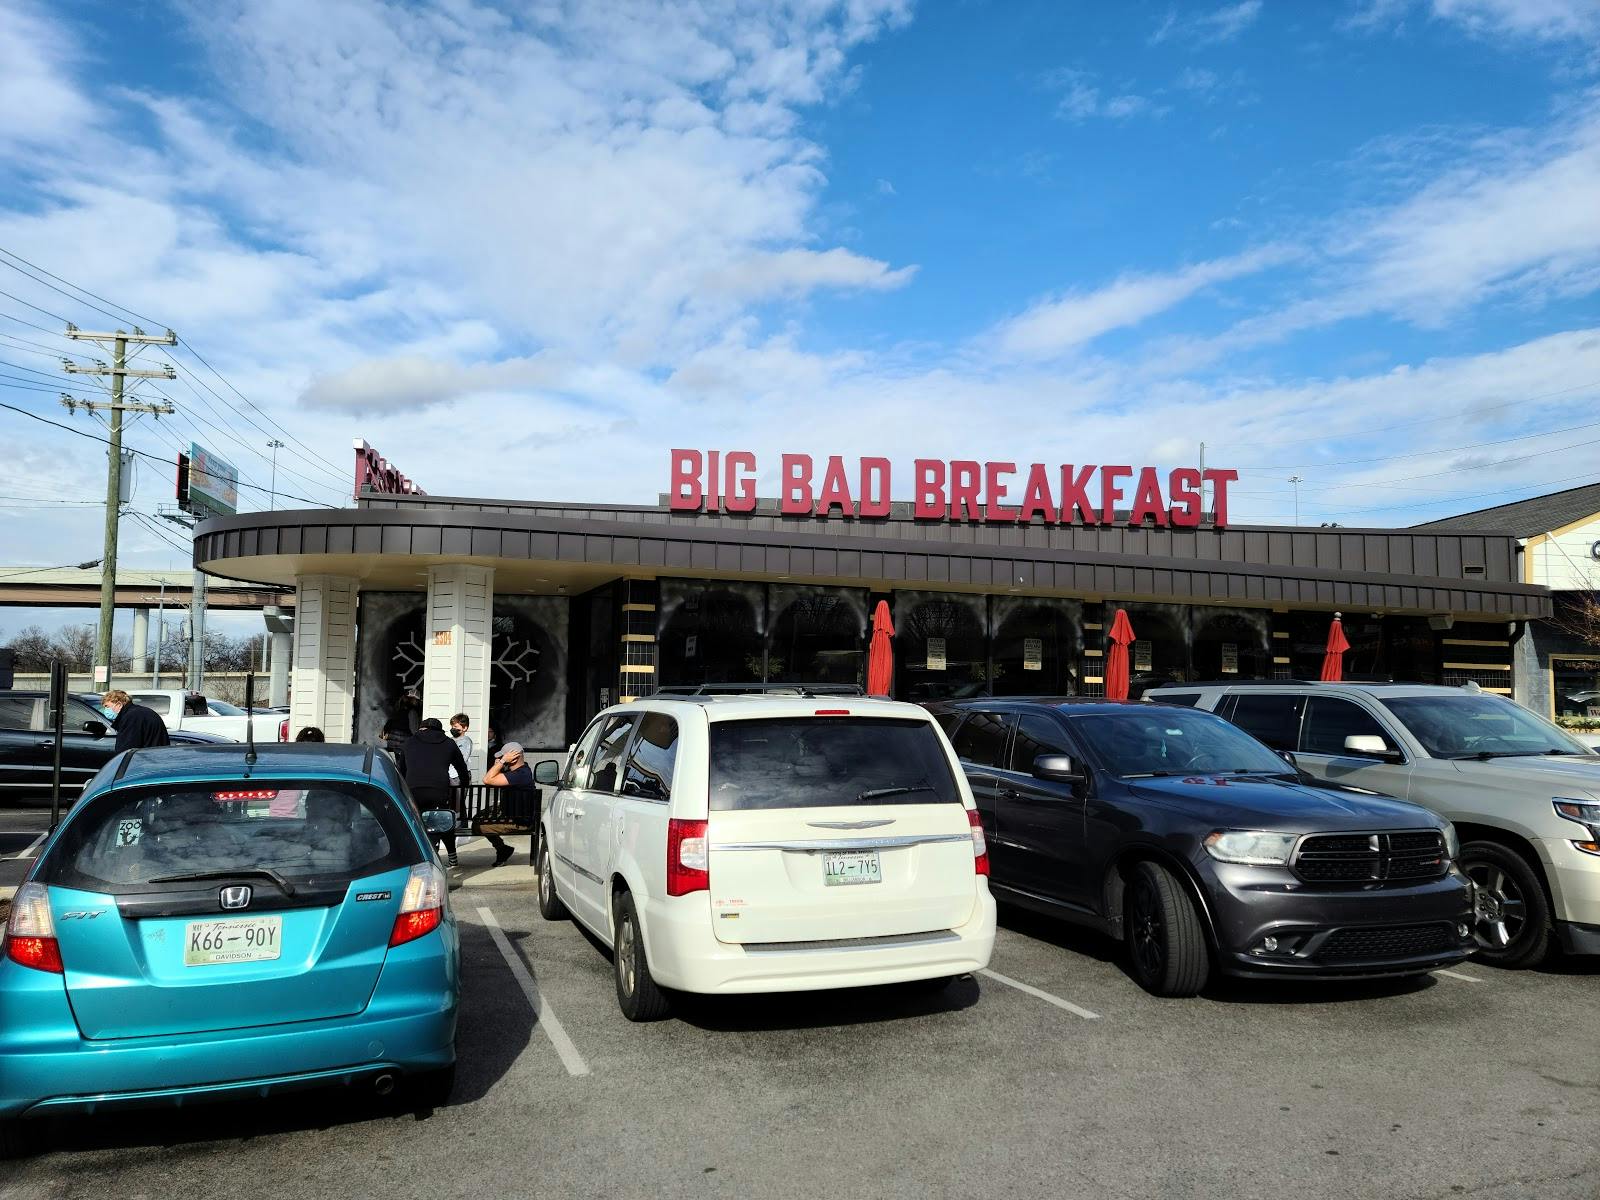 Image - Big Bad Breakfast-Nashville